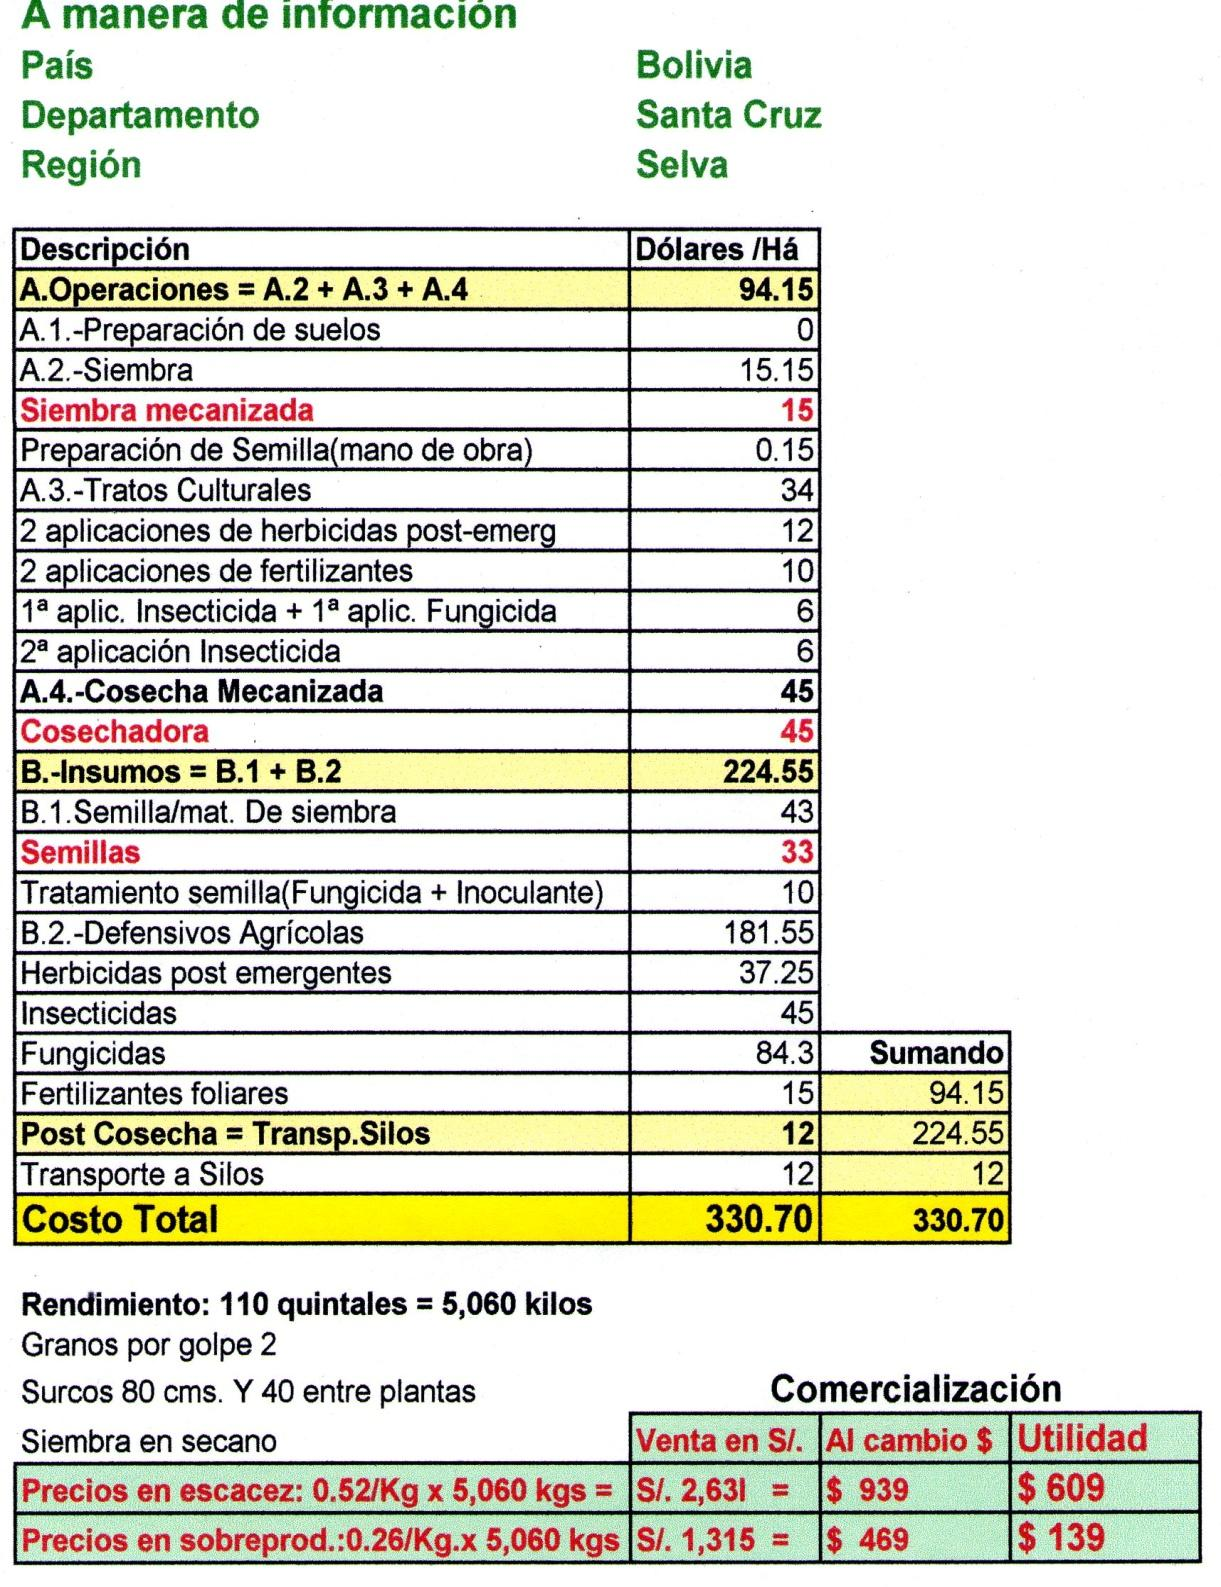 Costos de la Región que han Modernizado su agricultura con la Mecanización Argentina: $ 480 Bolivia : $